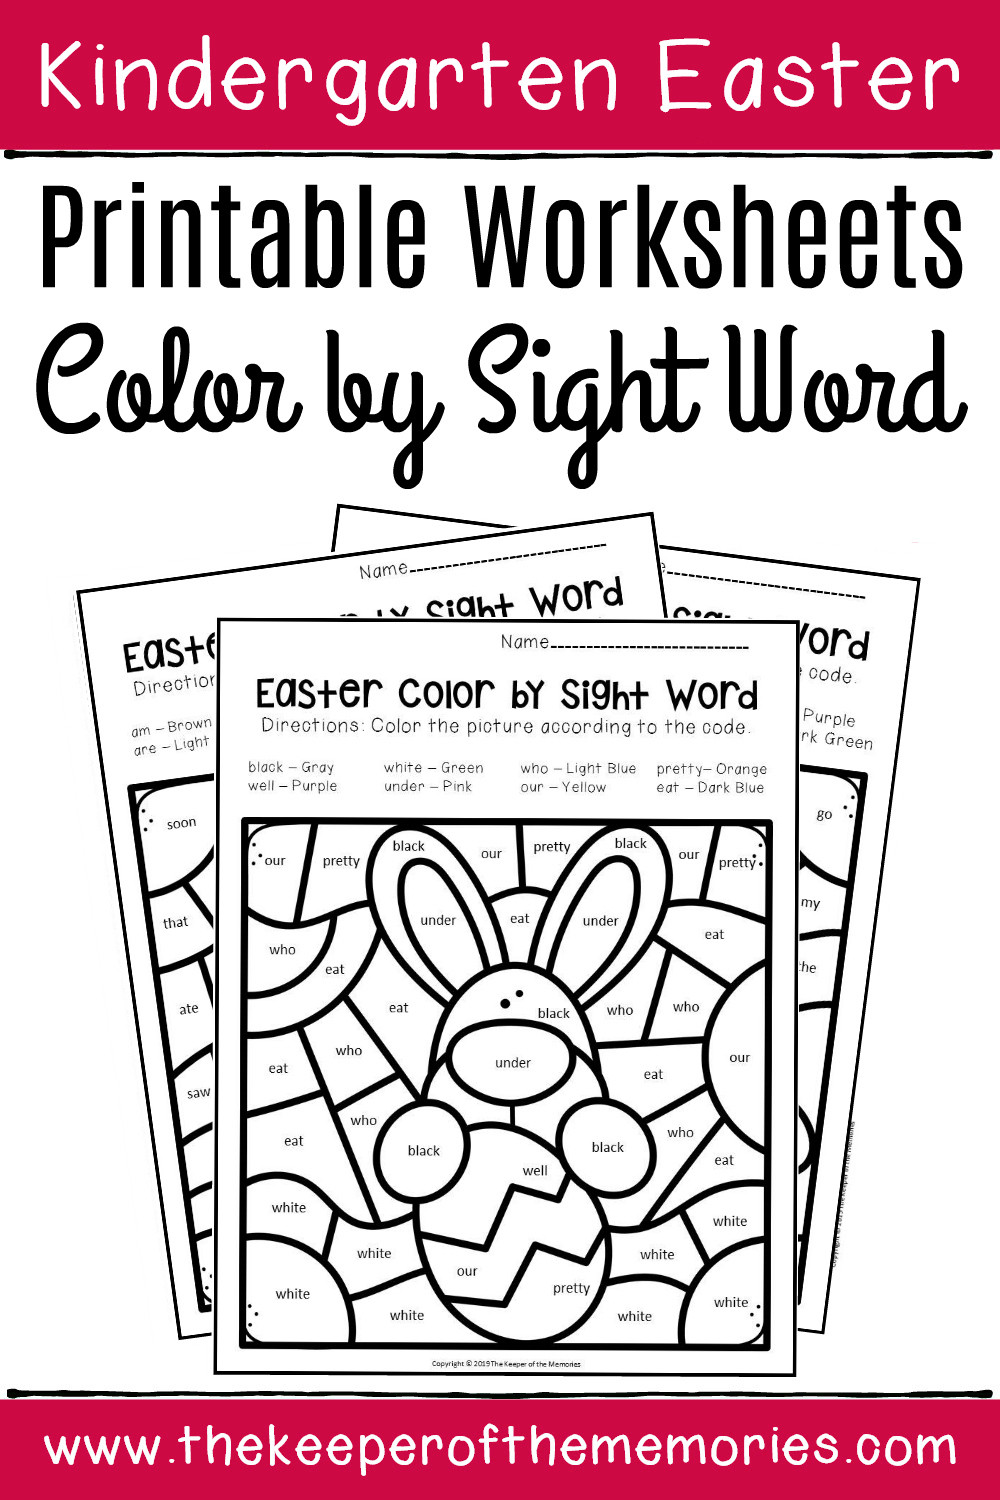 Color Word Worksheets for Kindergarten Color by Sight Word Easter Kindergarten Worksheets the